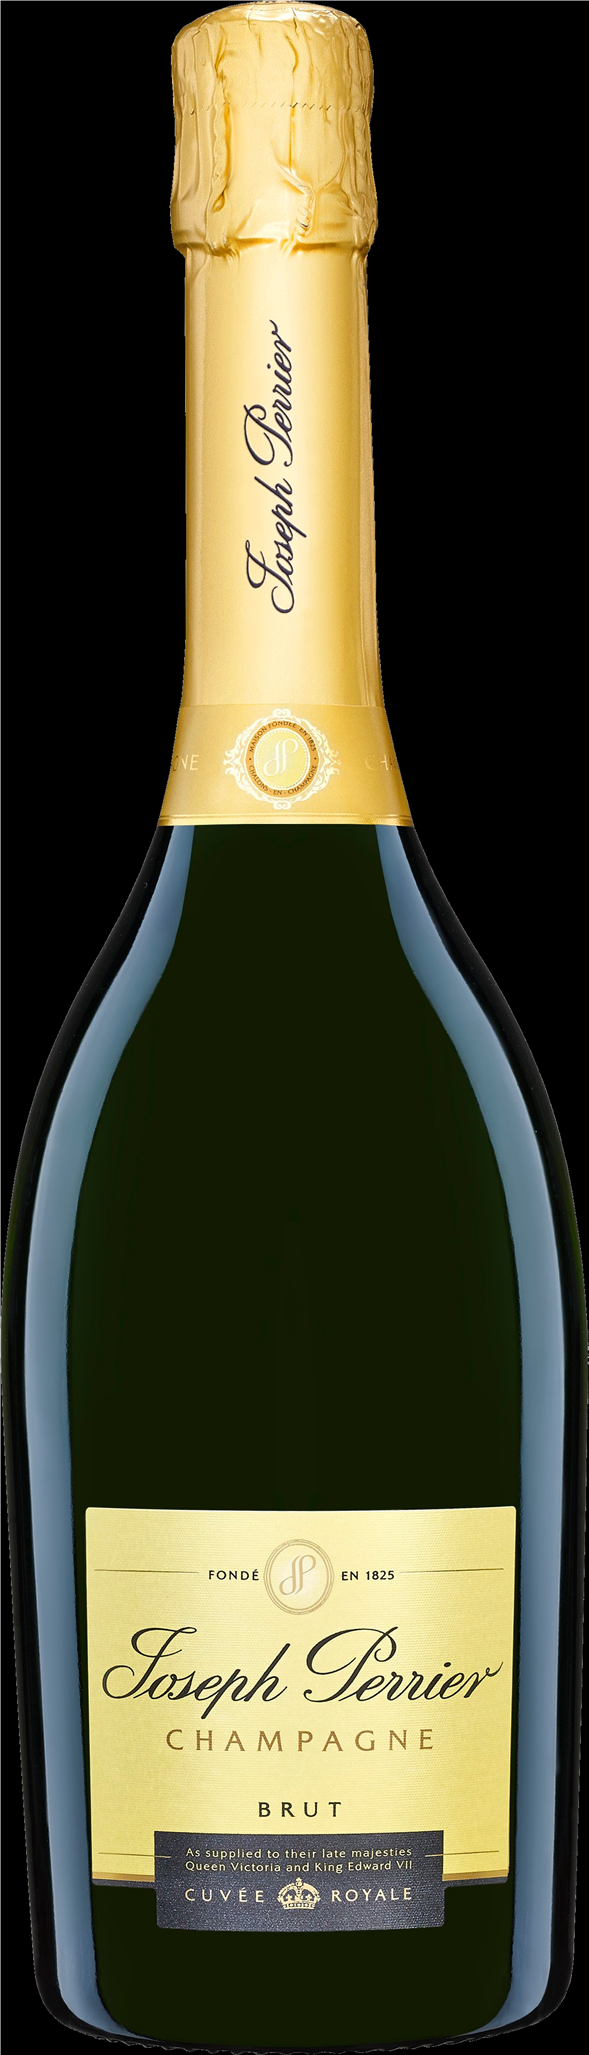 Joseph Perrier Brut Champagne Frankrig